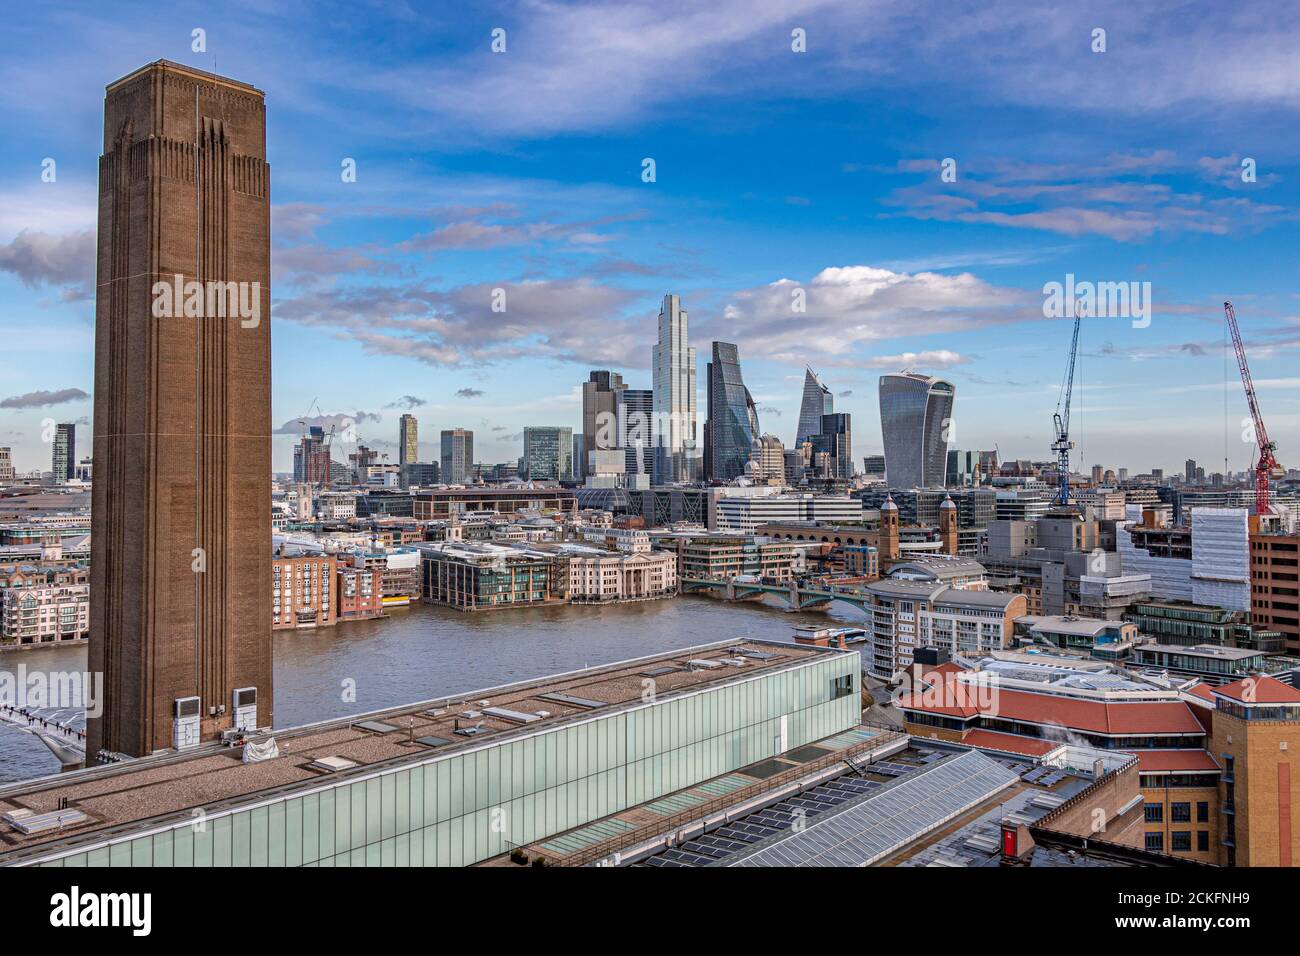 Die Wolkenkratzer der City of London von der Aussichtsplattform Tate Modern aus gesehen, London, Großbritannien Stockfoto